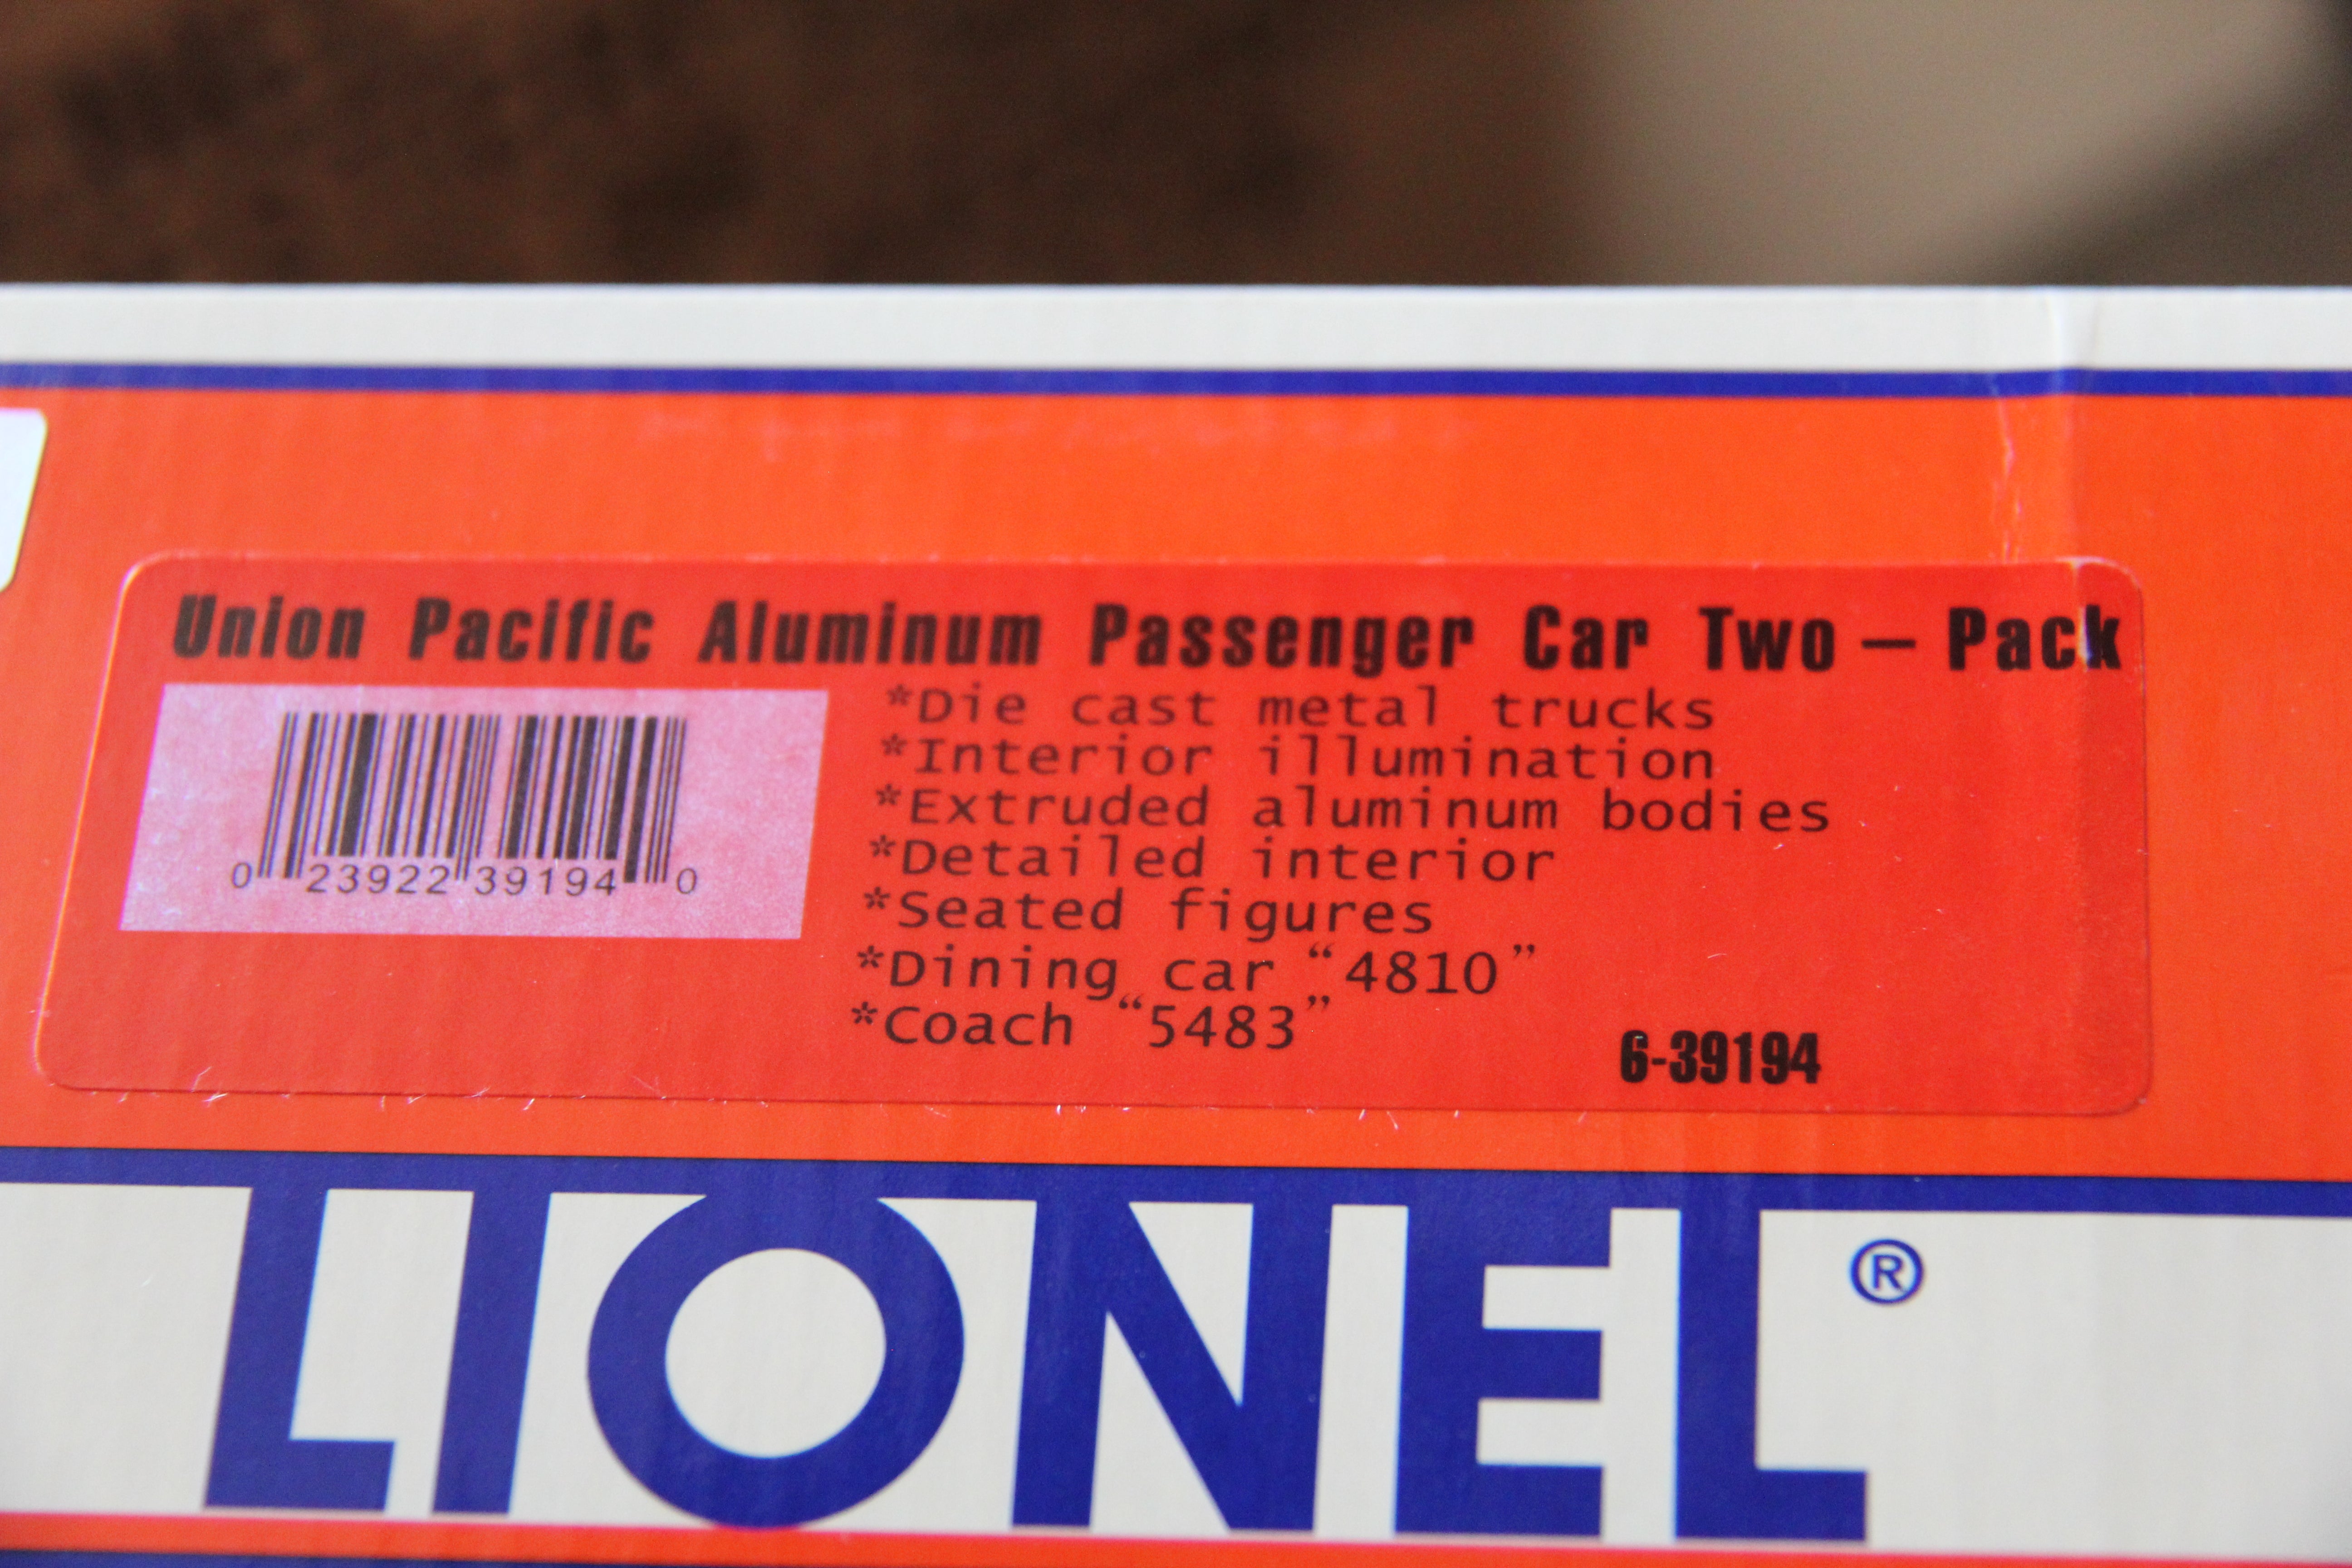 Lionel 6-39194 Union Pacific Aluminum Passenger Car 2 Pack-Second hand-M2907